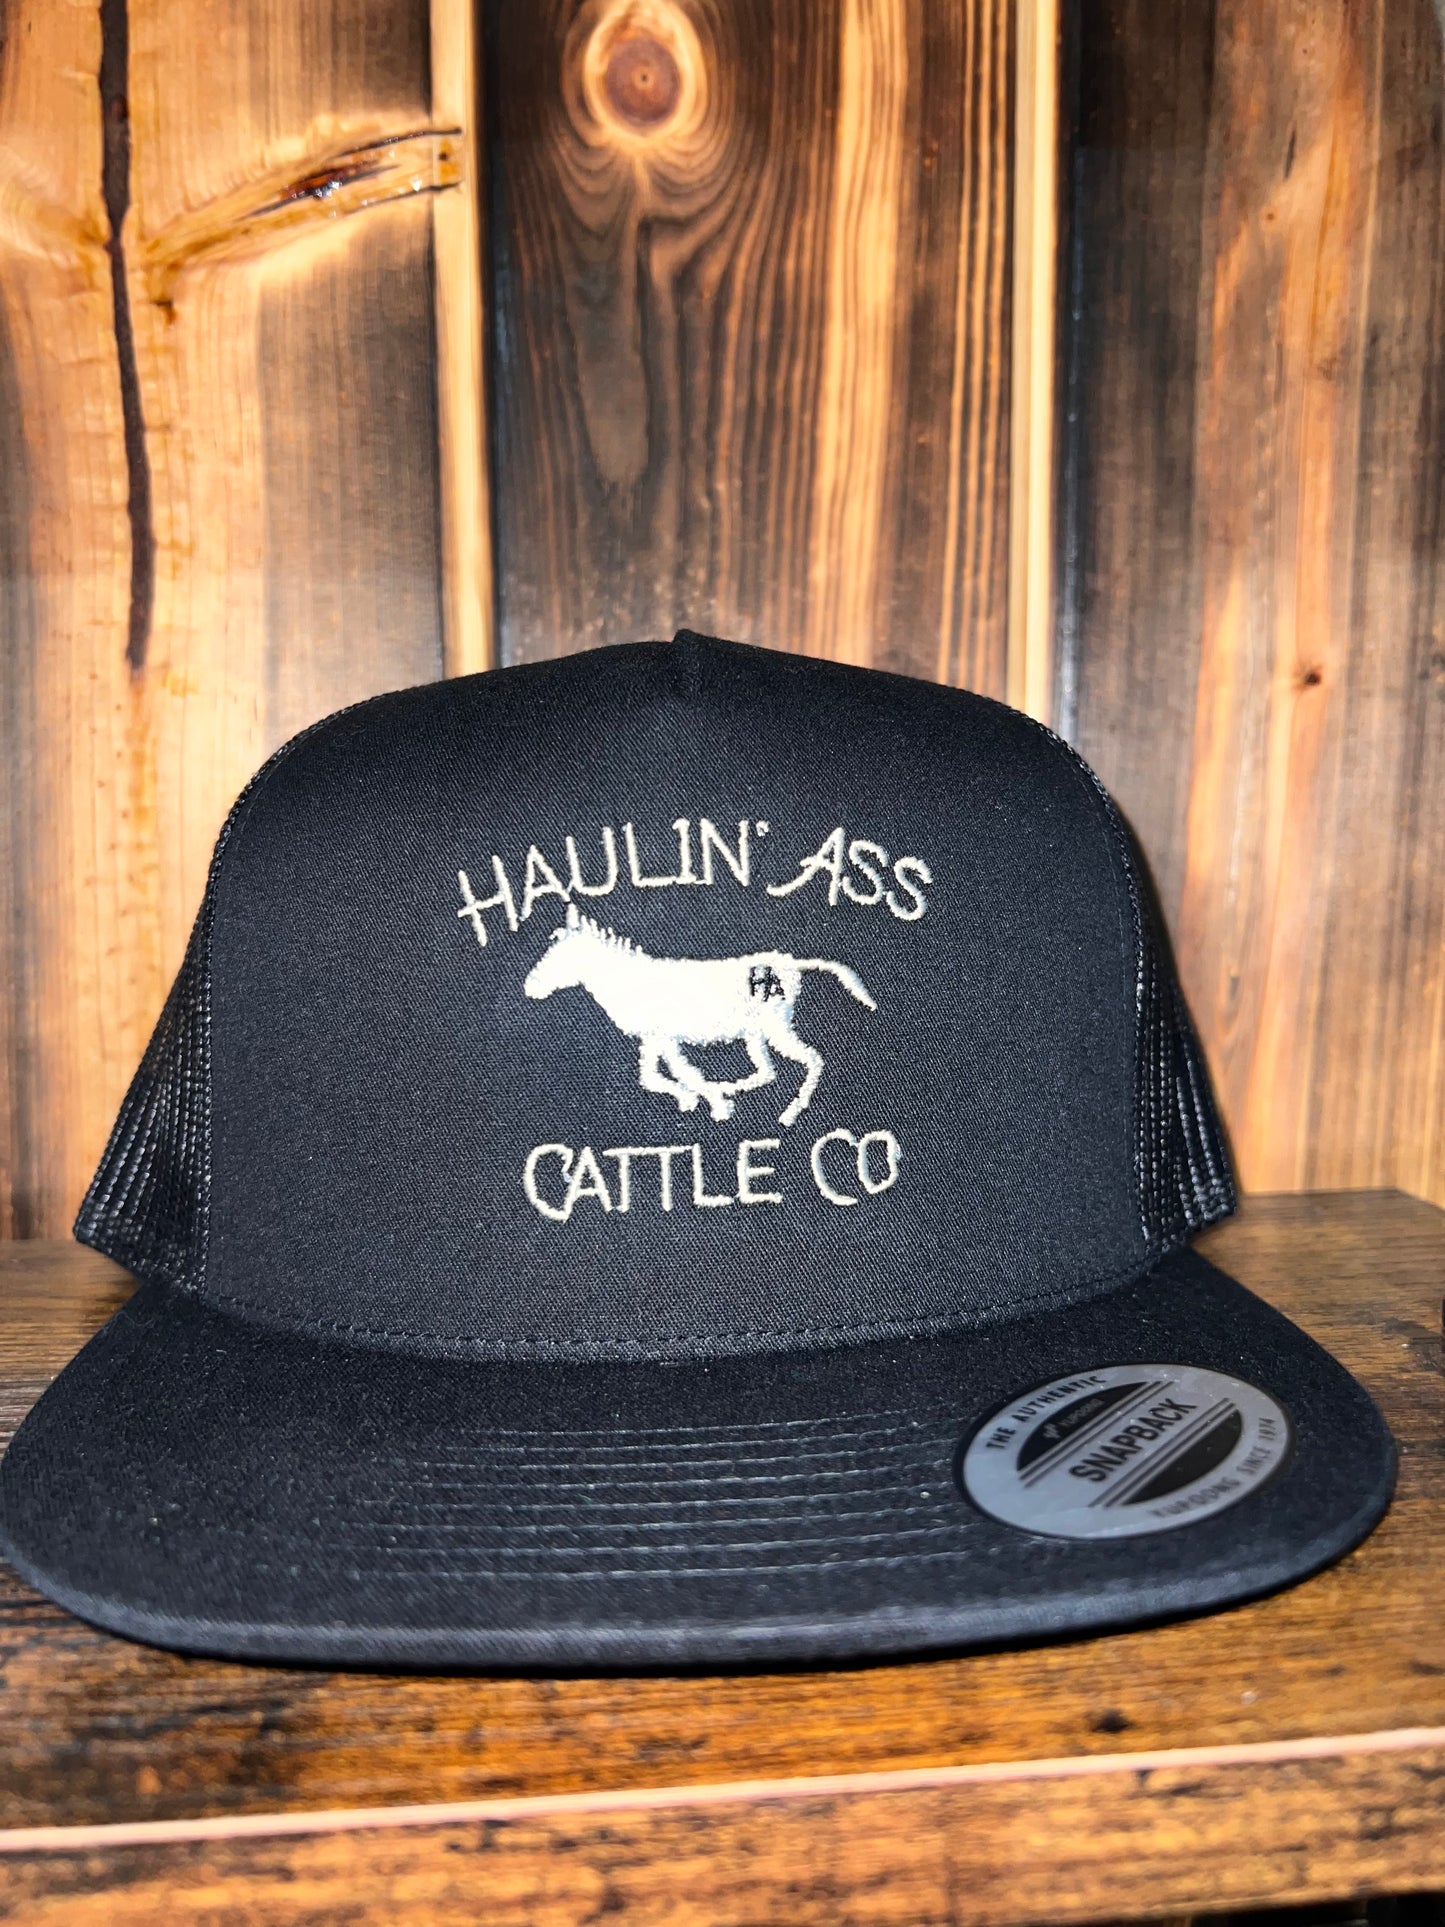 Haulin’ Ass Cattle Co/ Black